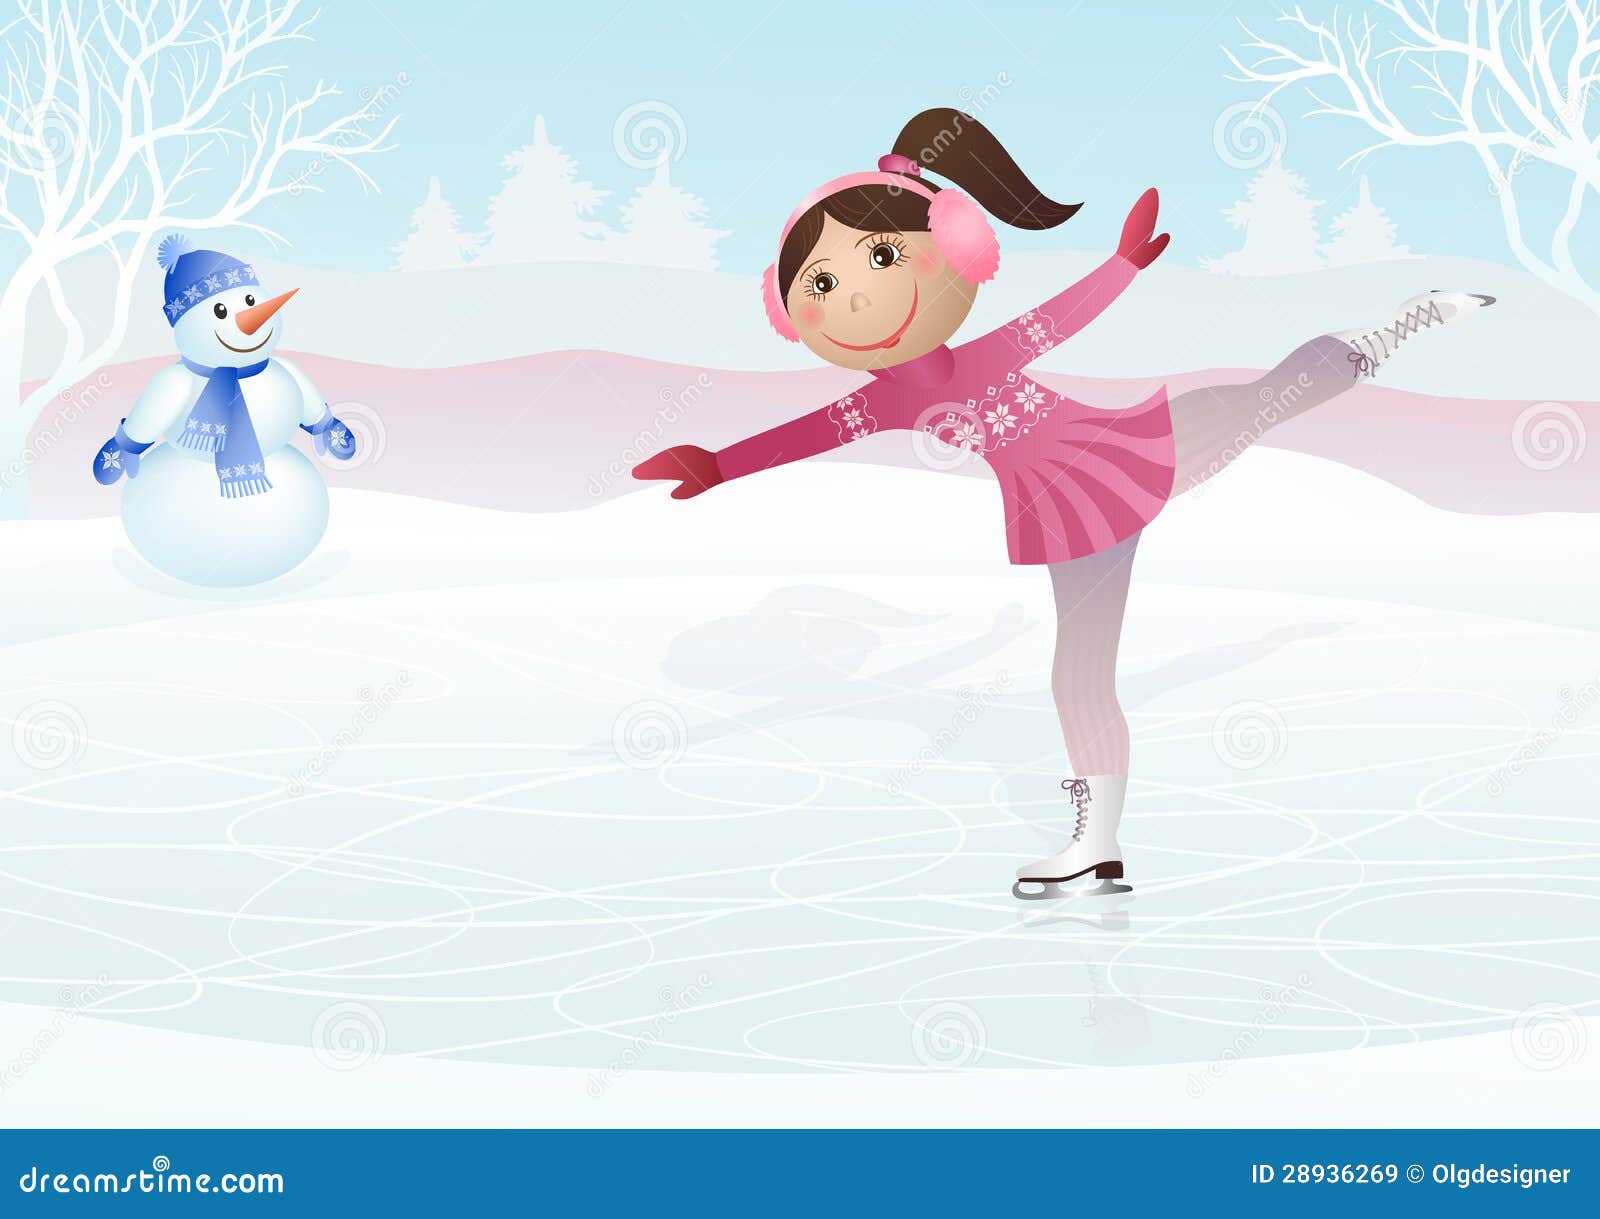 Фонарь на катке 9 букв. Девочка на льду. Девочка катается на коньках. Фигуристы на льду. Маленькие фигуристки катаются на льду.